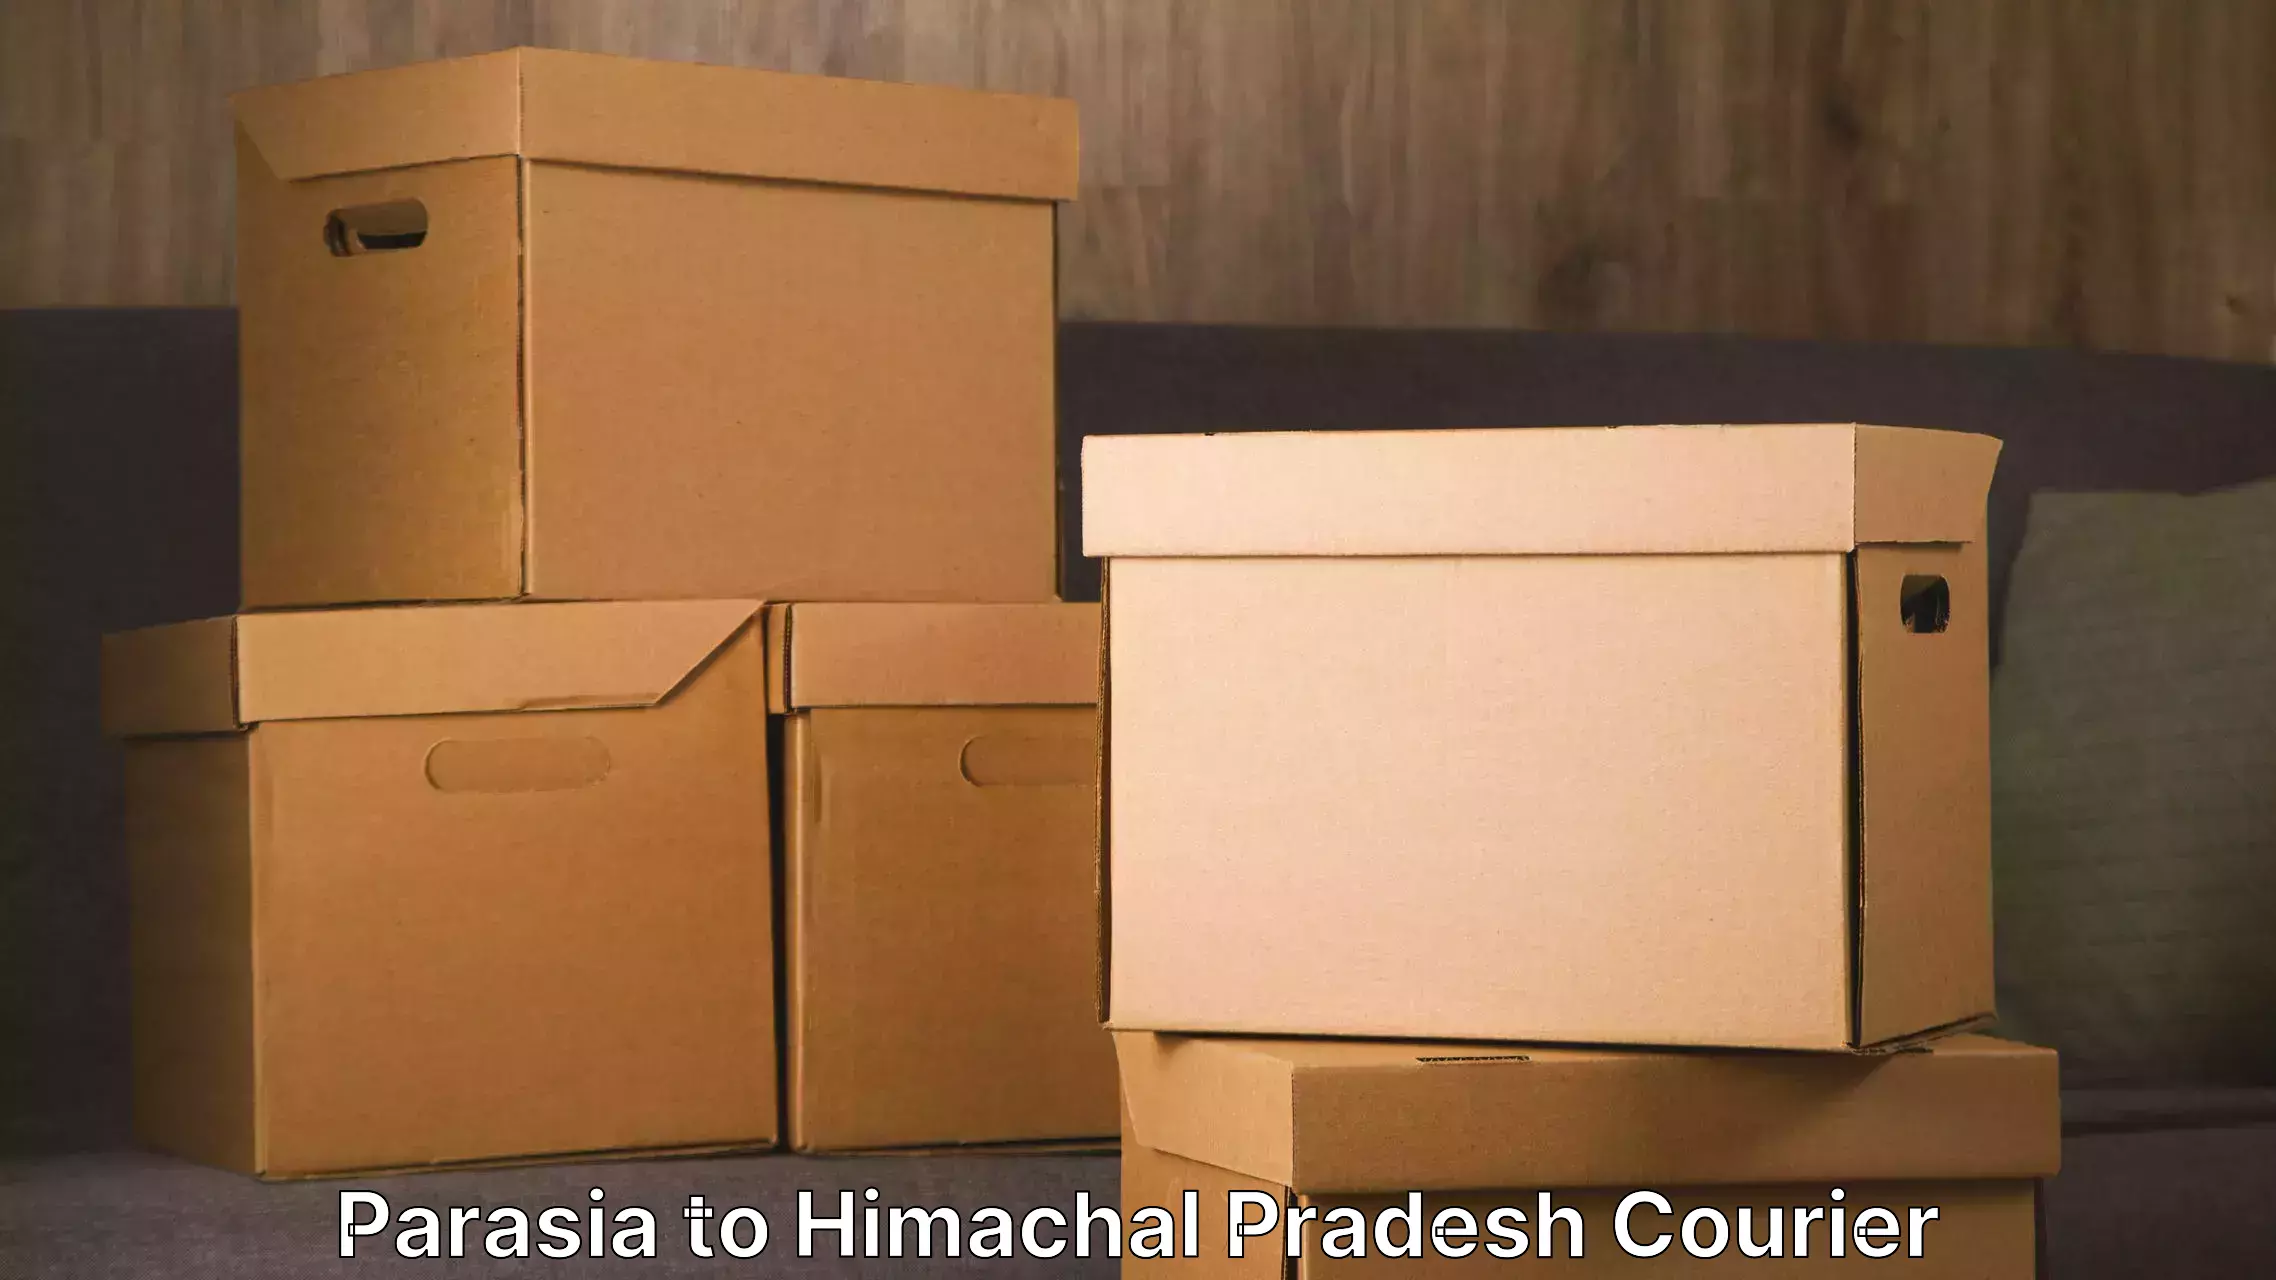 Furniture moving experts Parasia to Himachal Pradesh